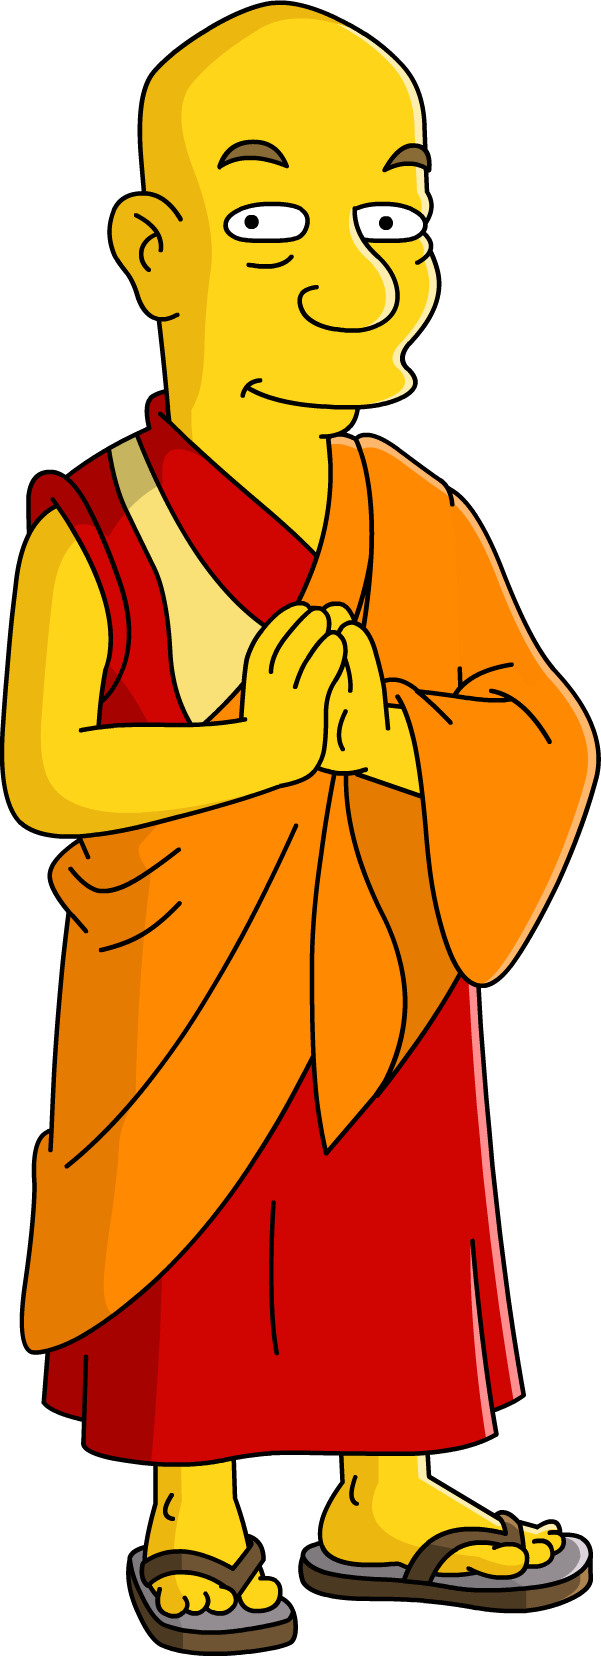 Dalai Lama Download PNG Image